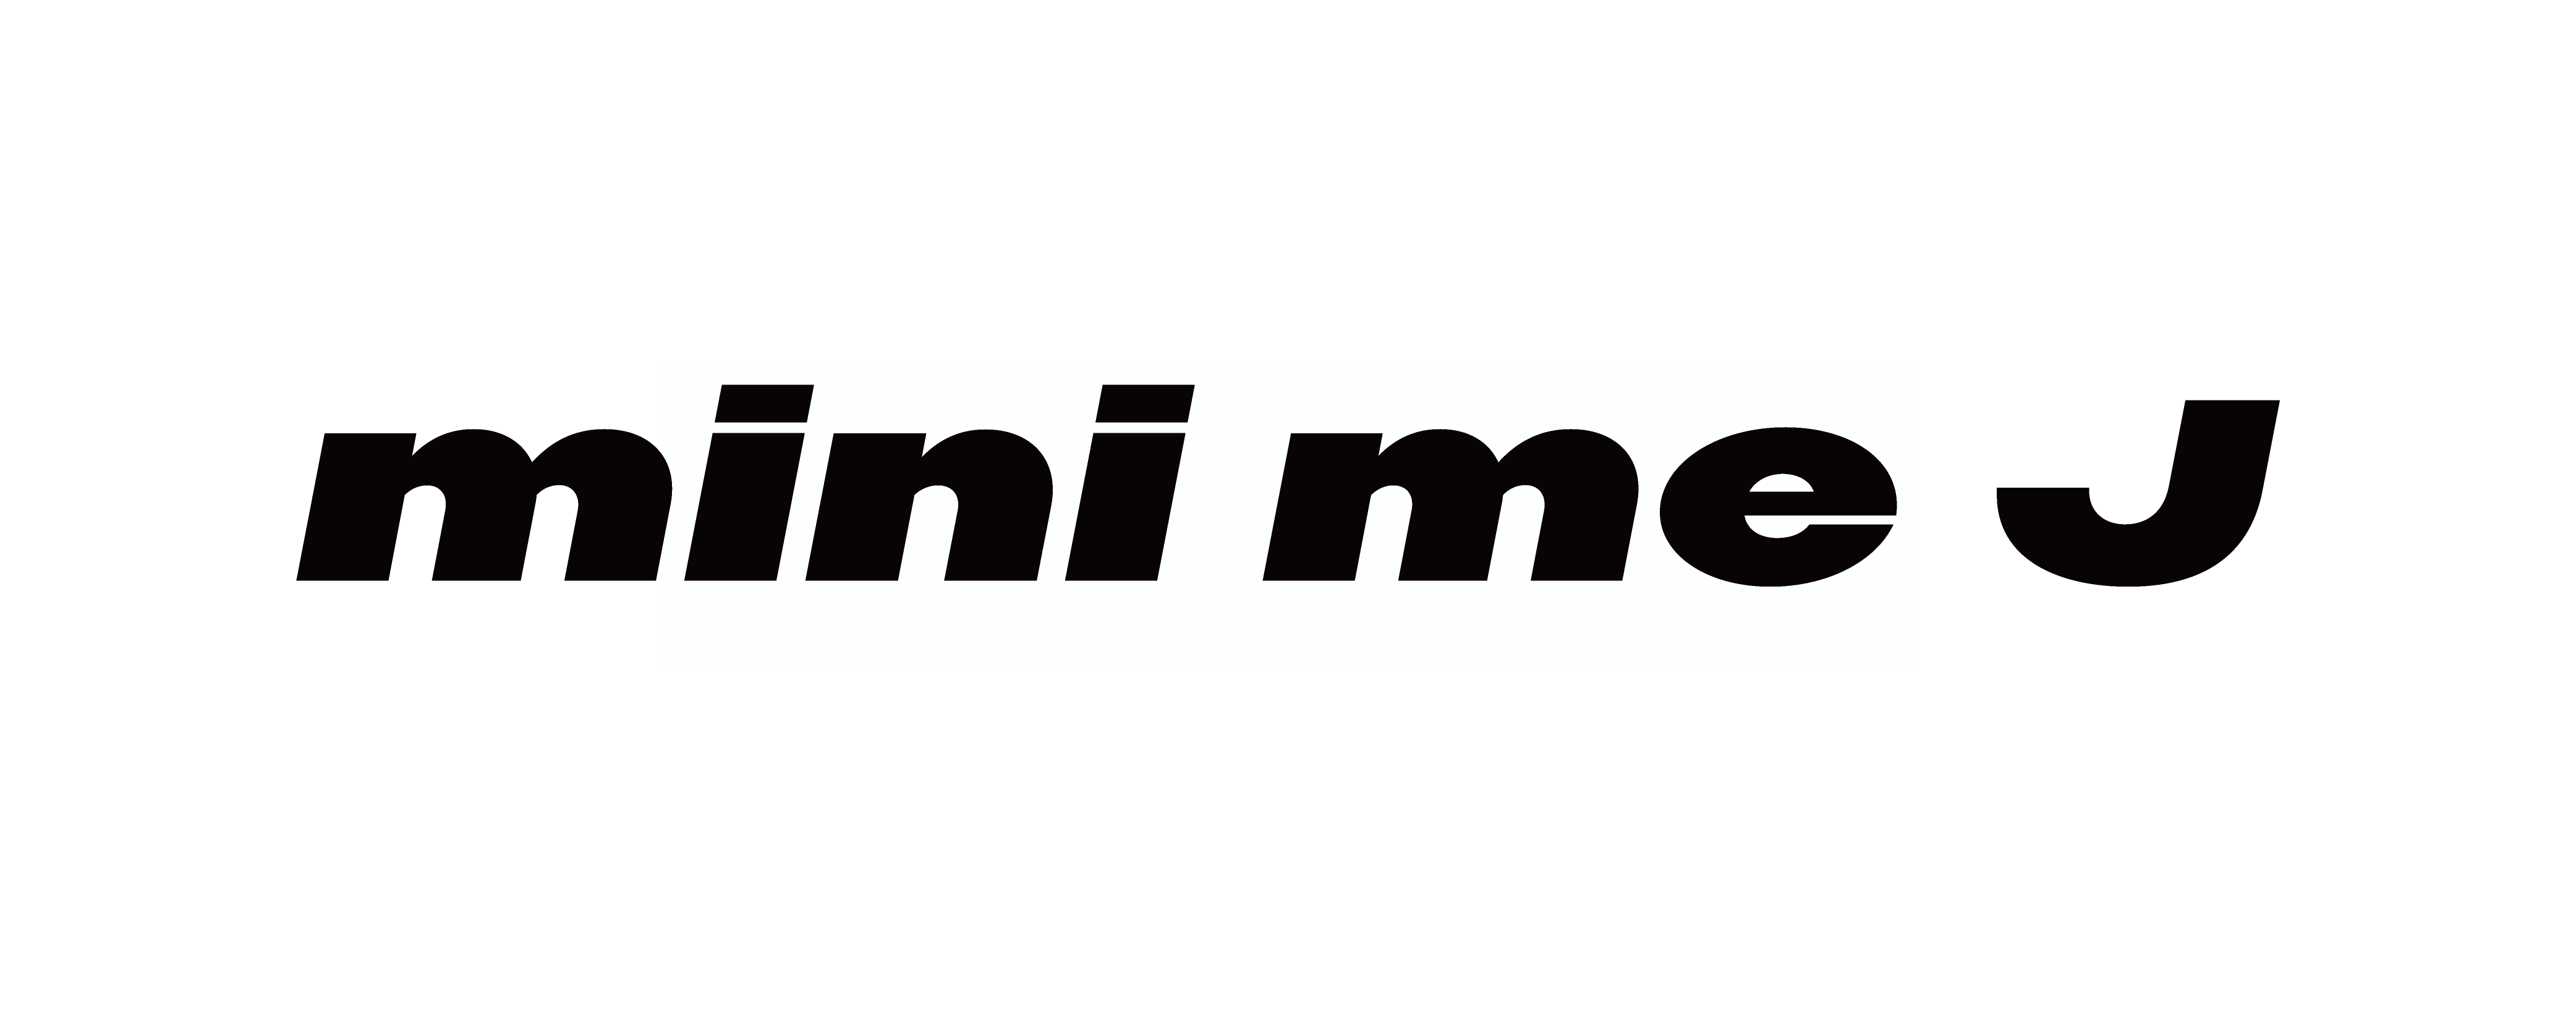 mini me J